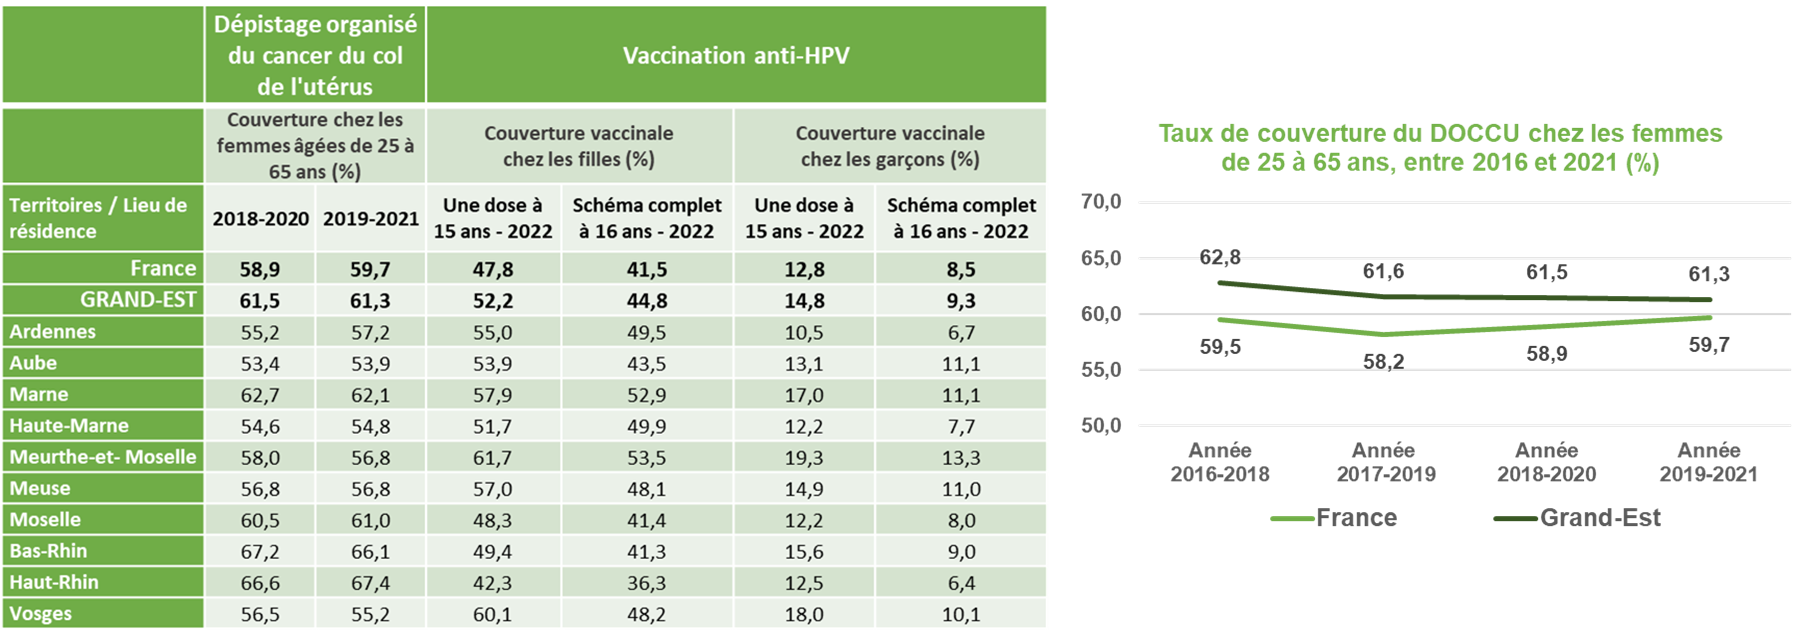 Données Grand Est DO CCU Femmes 25-65 ans _2016-2021_Vaccination HPV